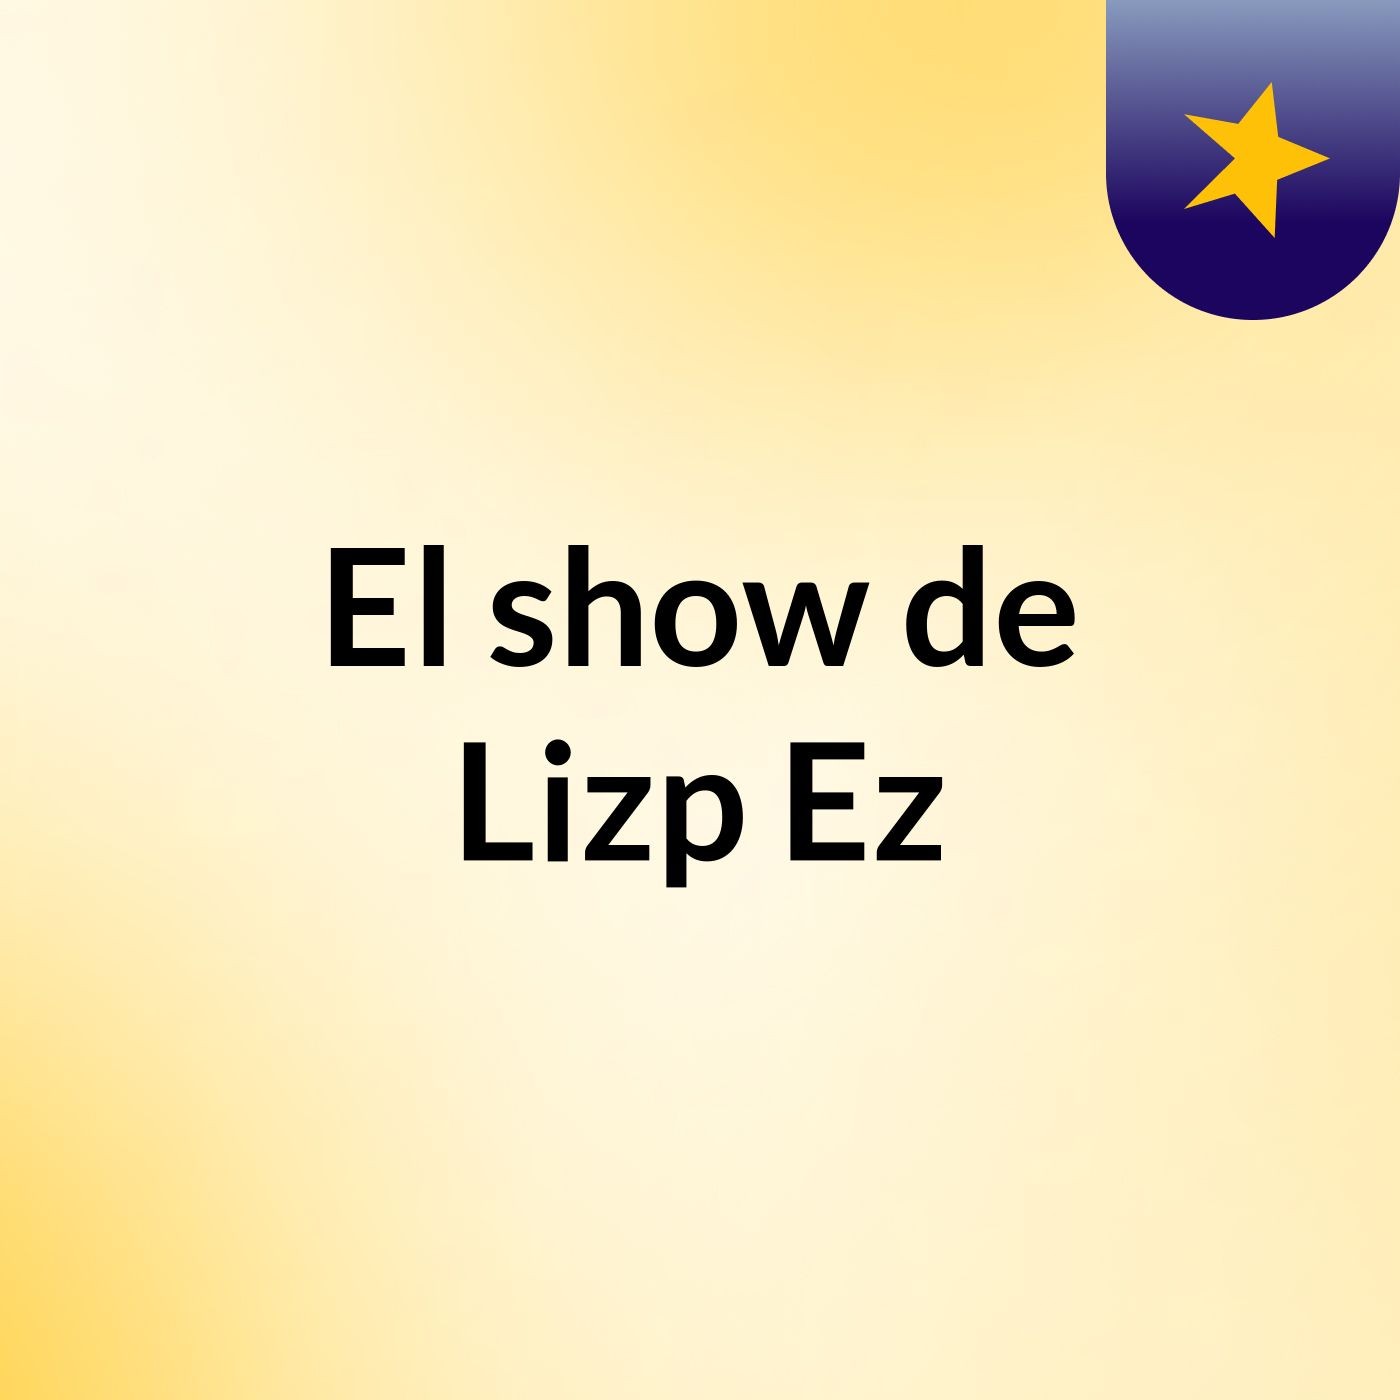 - El show de Lizp Ez